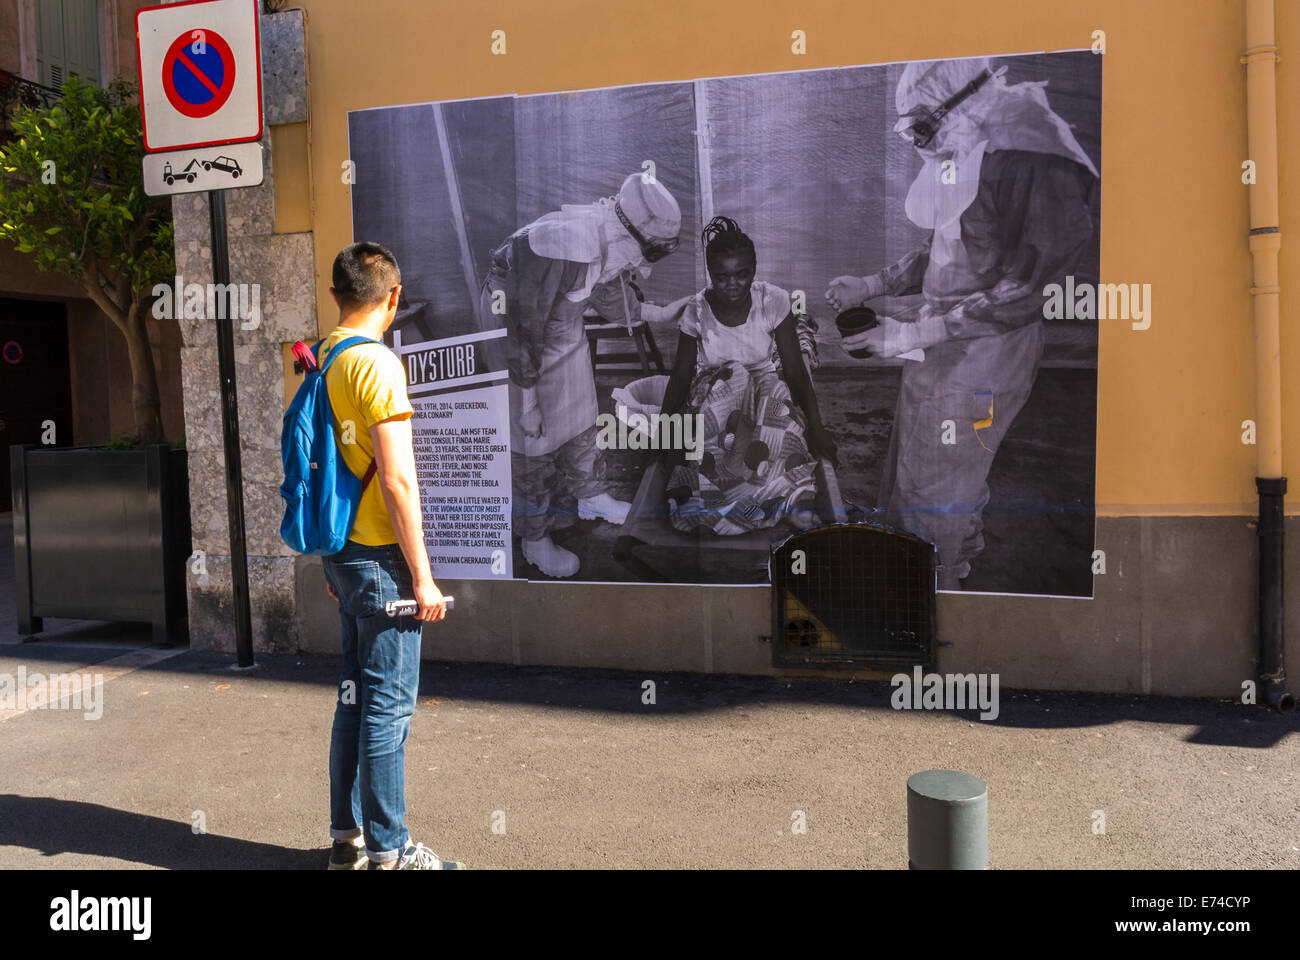 Perpignan, France, touristes chinois visitant dans "Visa pour l'image' Festival de photojournalisme Exposition Galerie de photographie en plein air, sur les murs de la ville Banque D'Images